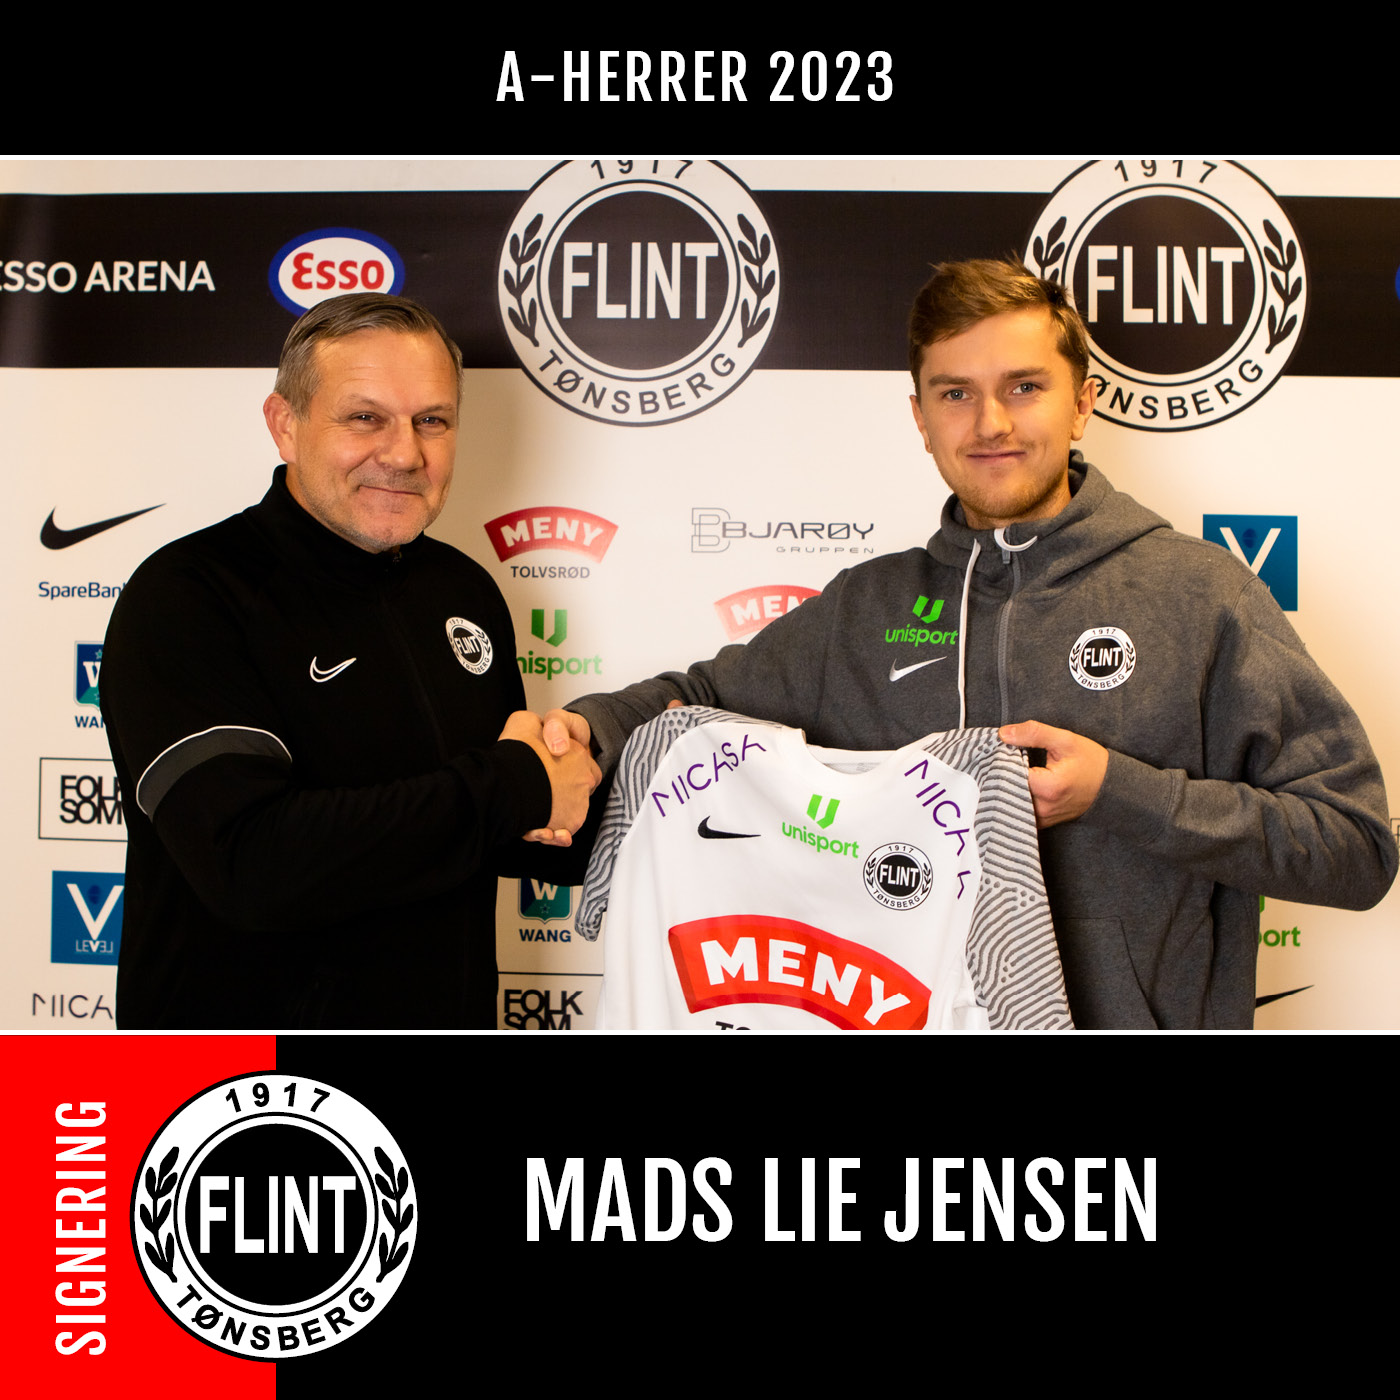 https://www.flintfotball.no/wp-content/uploads/2022/12/Mads-Lie-Jensen-sign-2023-insta-FB.jpg